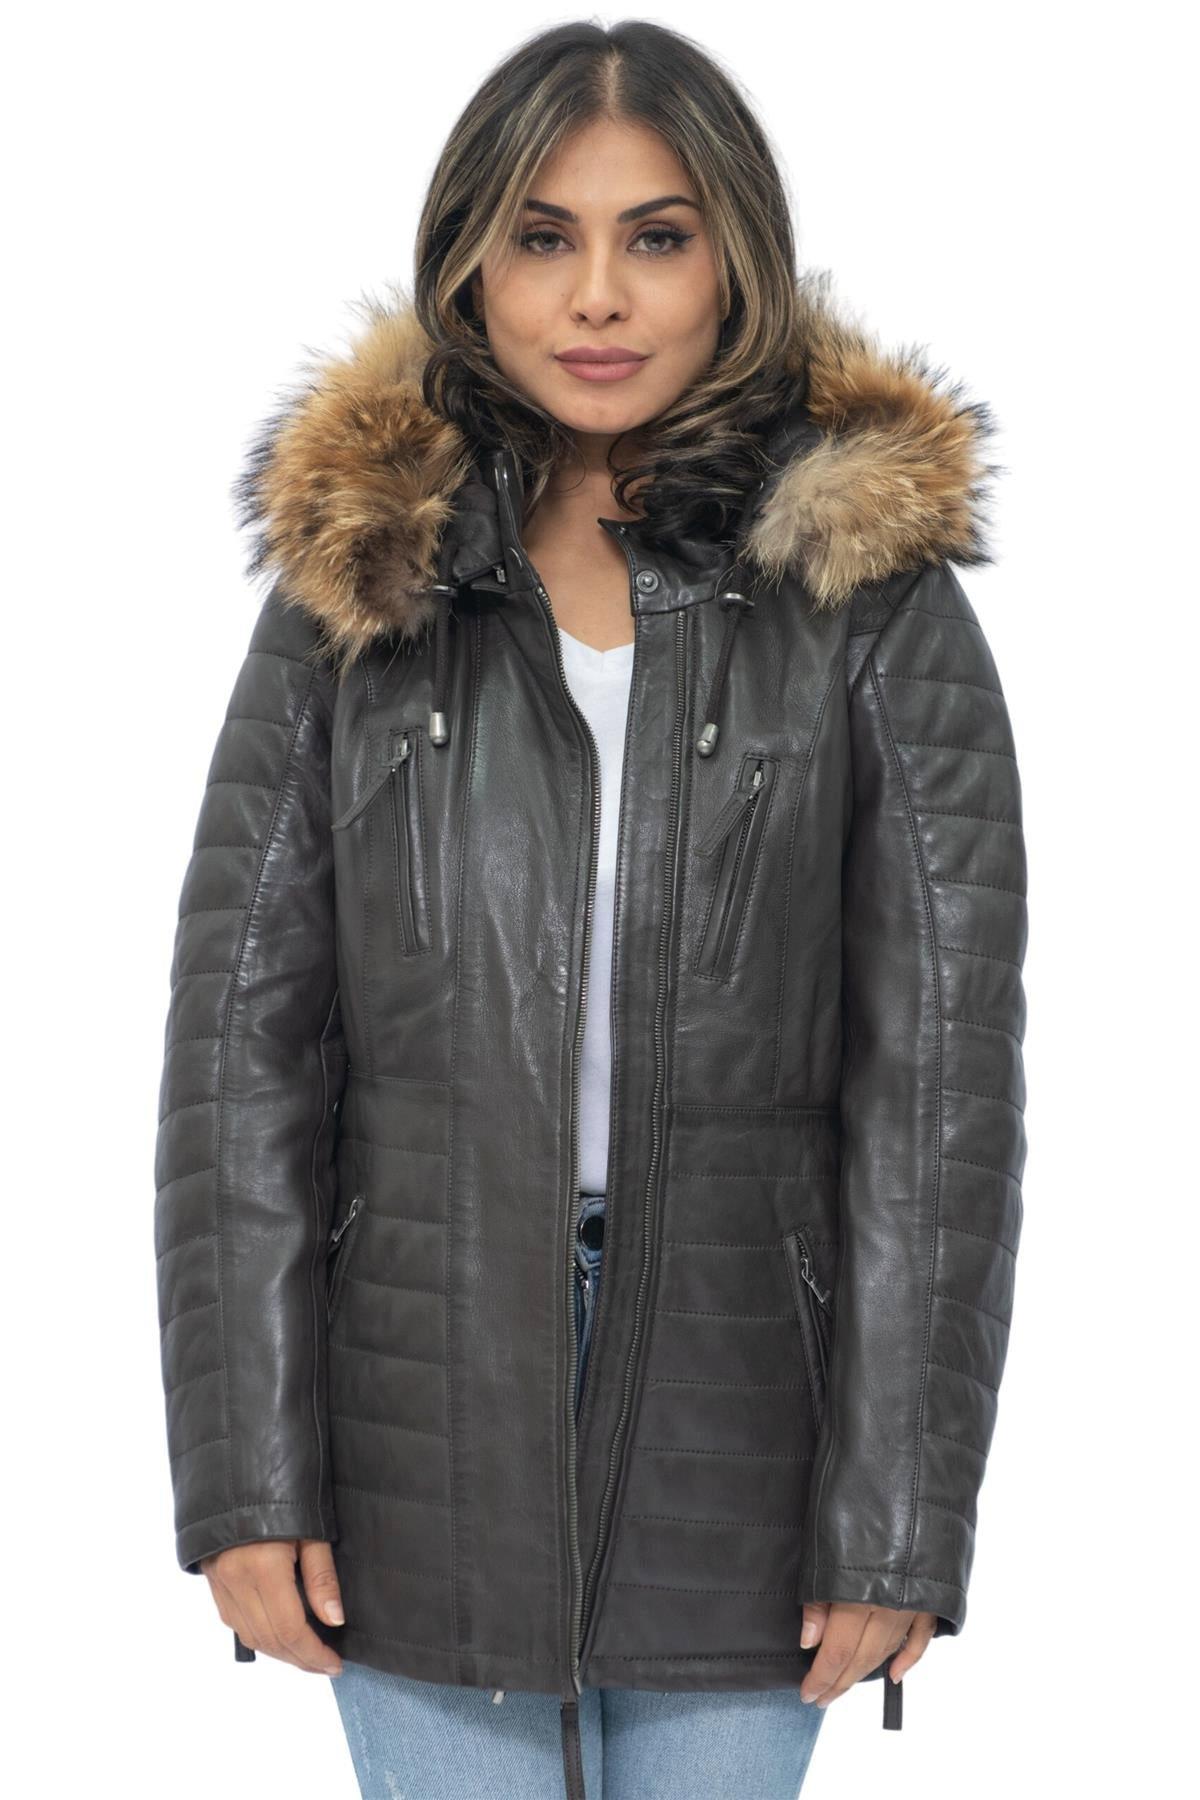 Стеганая кожаная куртка-парка-Куритиба Infinity Leather, коричневый женская куртка на хлопковом наполнителе длинная облегающая парка с меховым воротником и капюшоном зима 2019